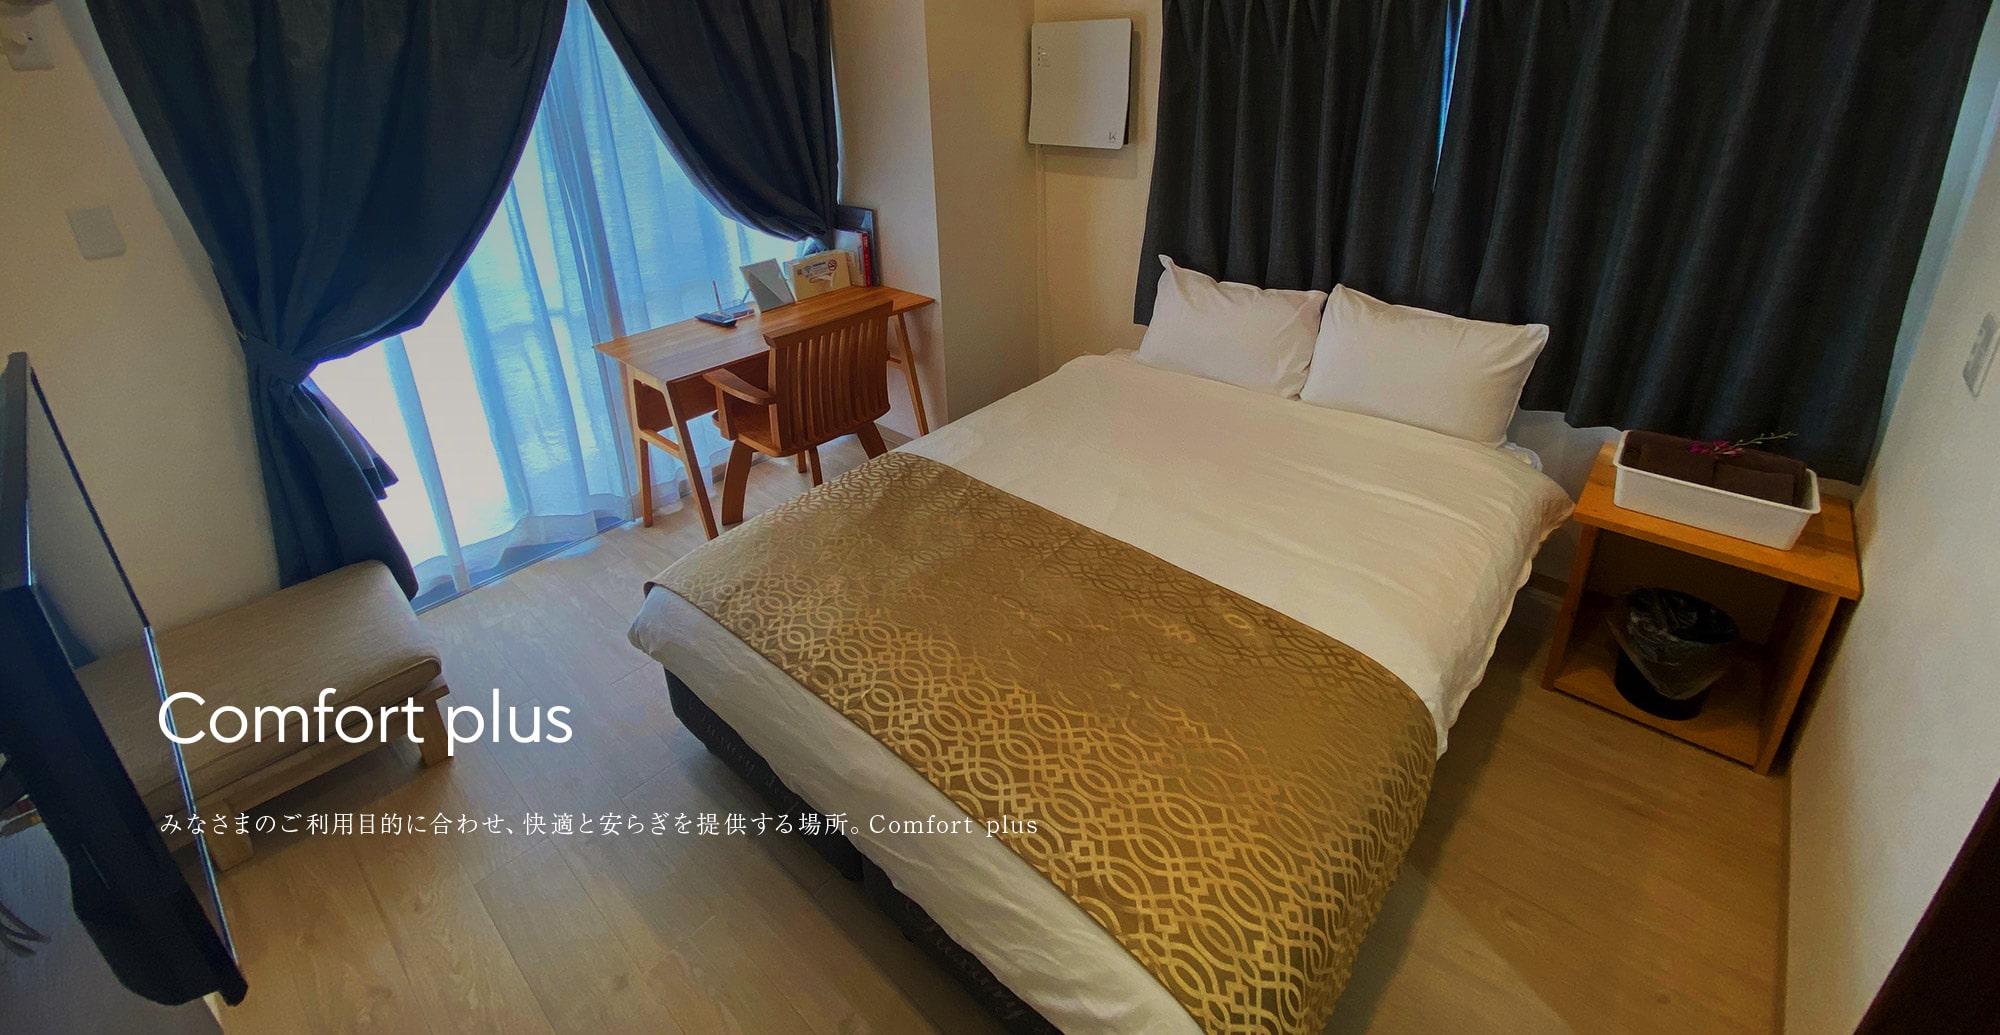 Comfort Plus みなさまのご利用目的い合わせ、快適と安らぎを提供する場所。